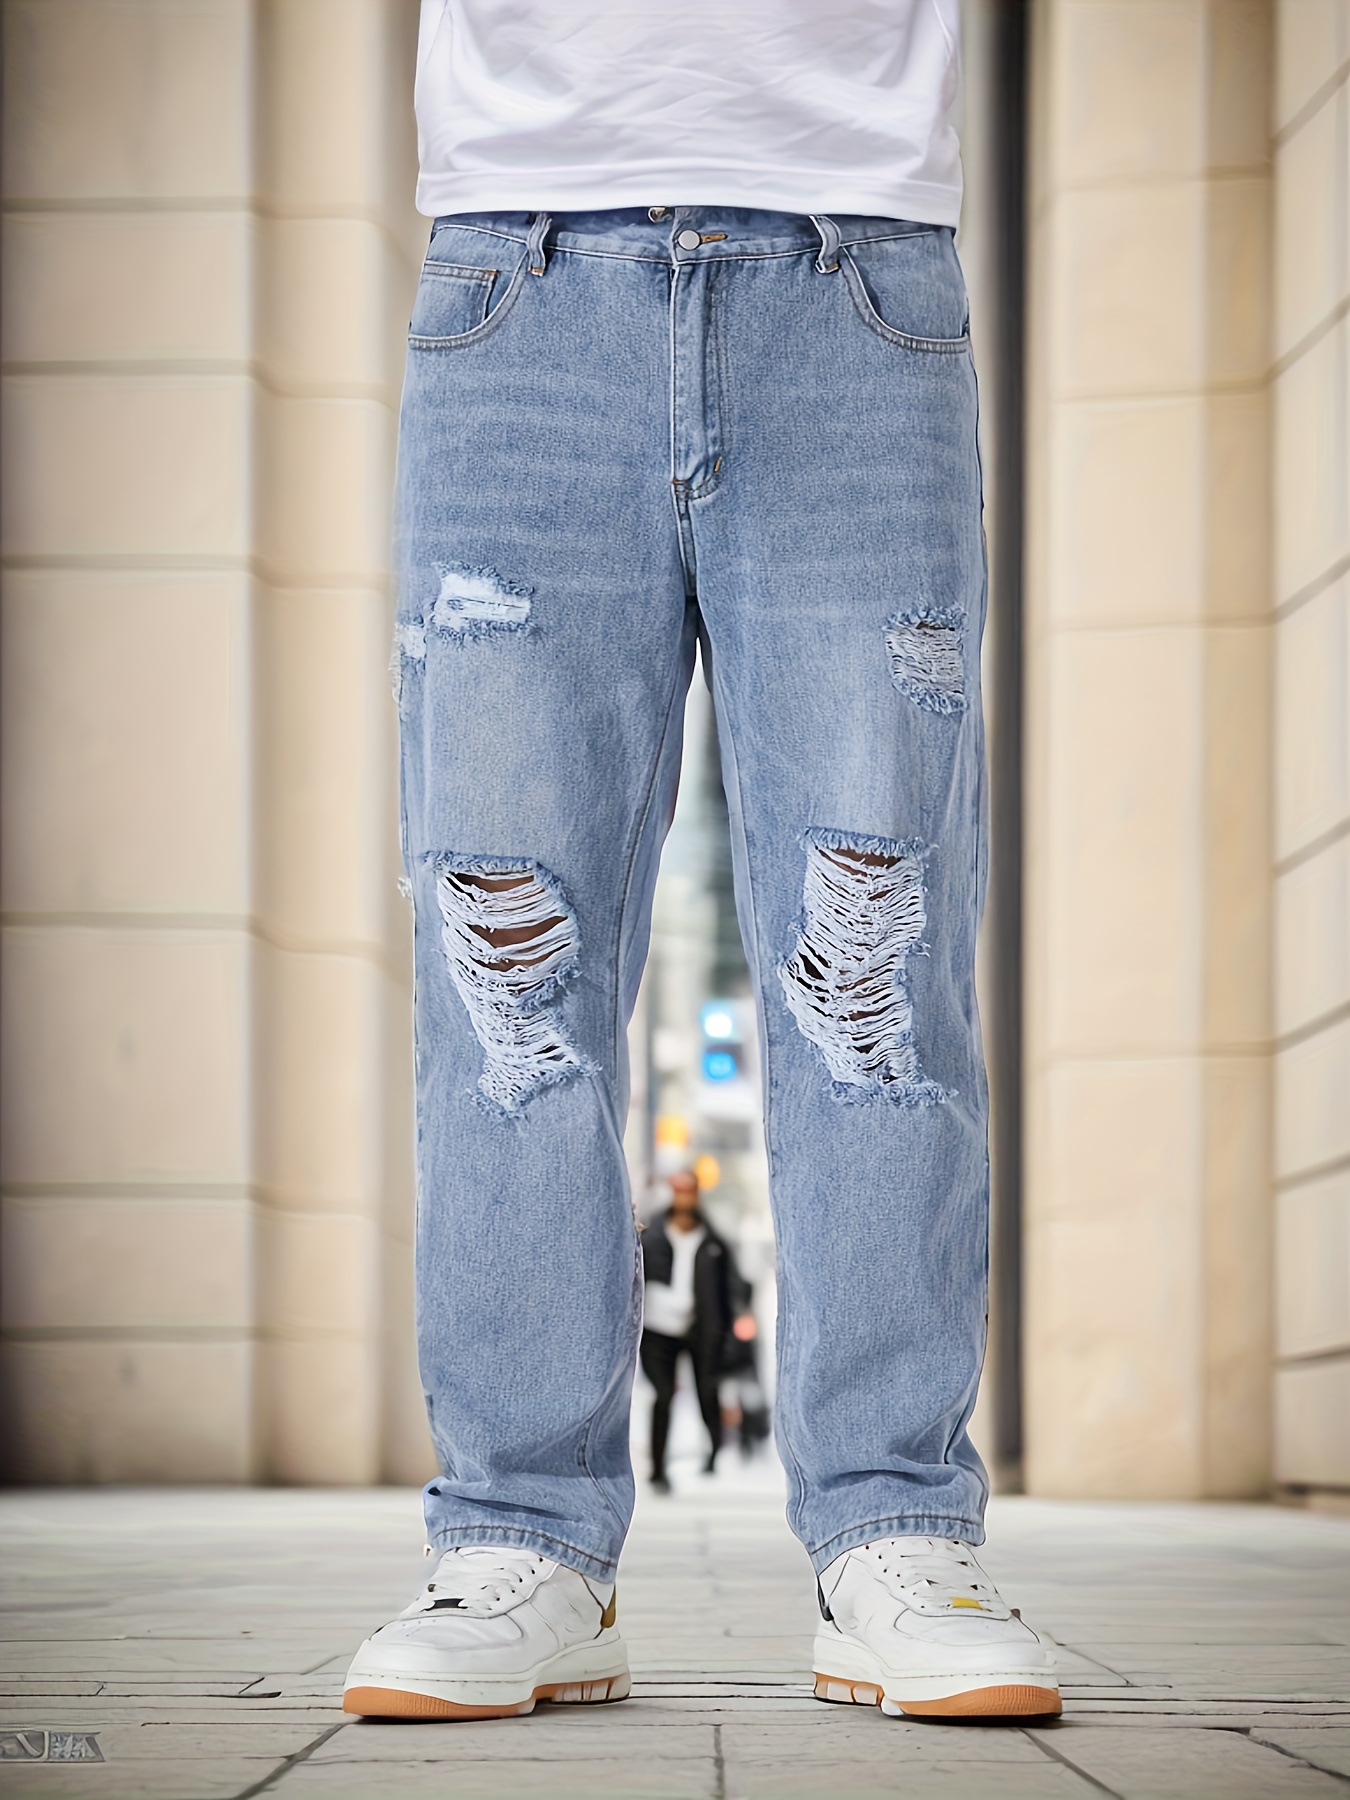 Men's Graffiti Ripped Pants Elegant Fashion Casual Slim Jeans